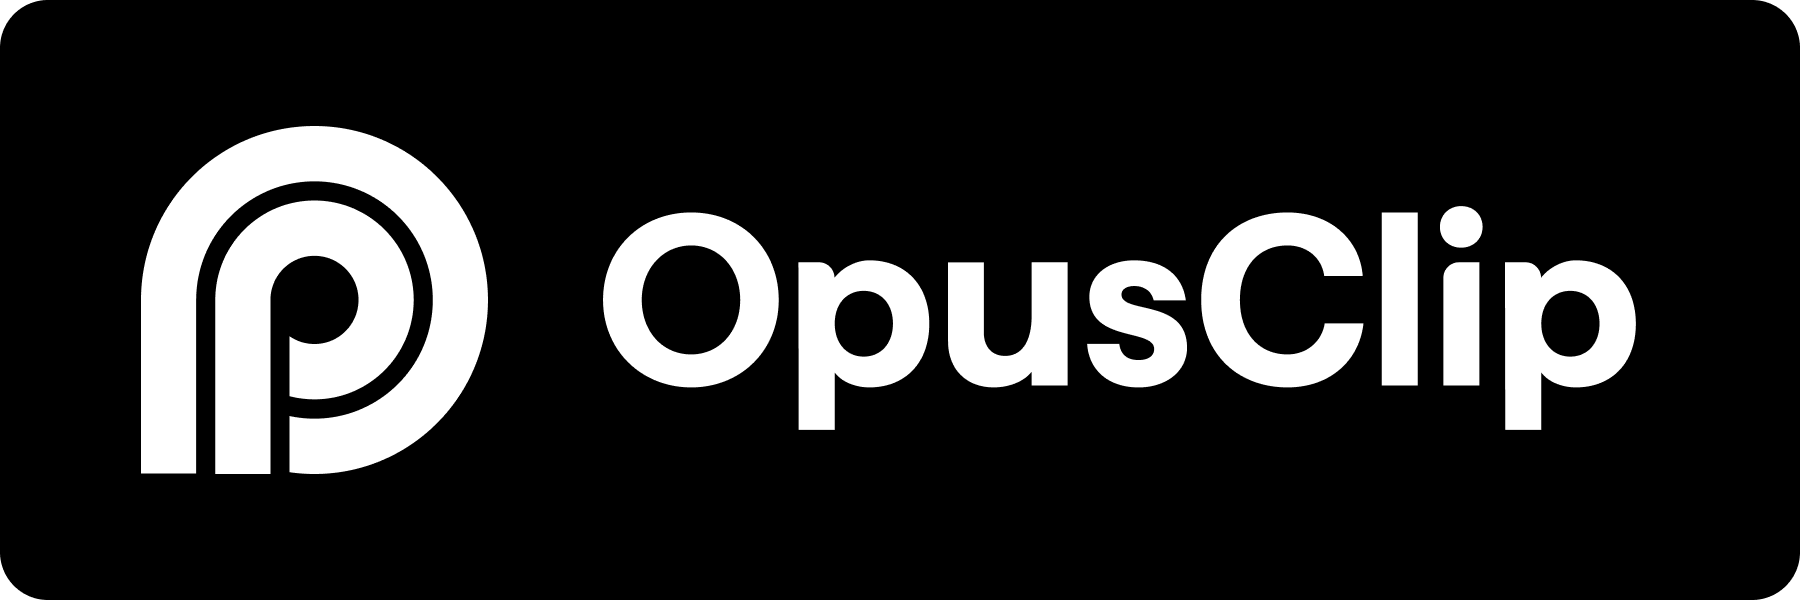 opusclip-logo